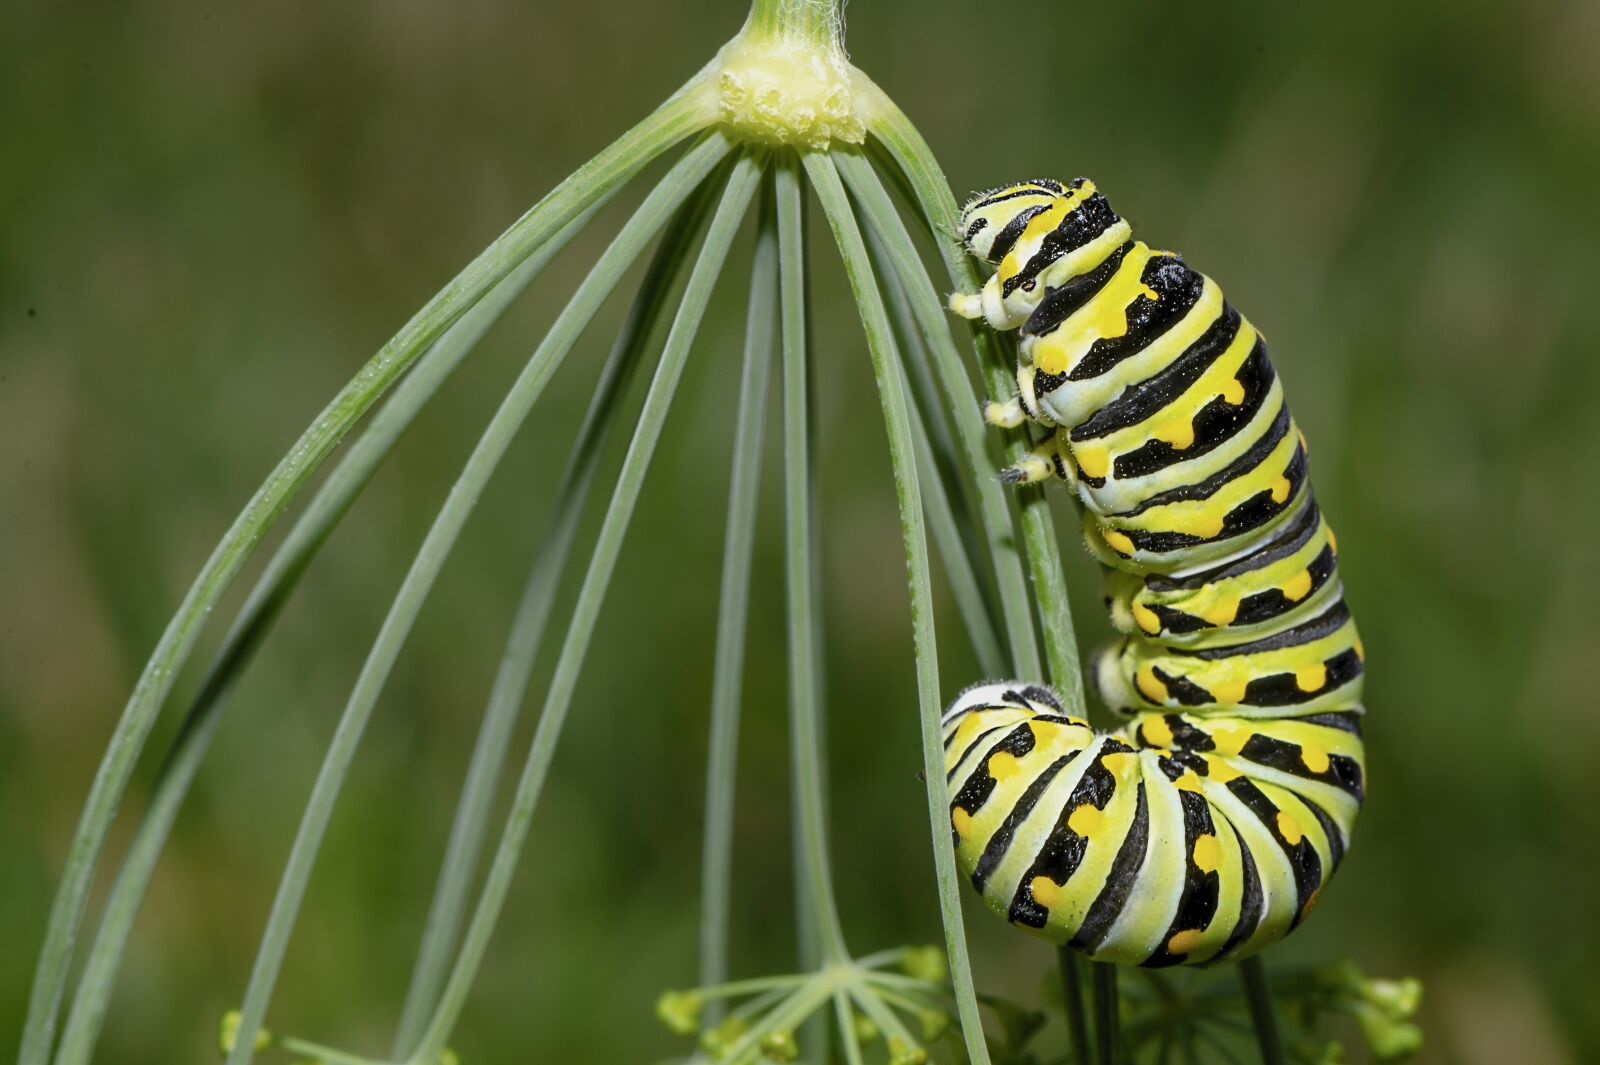 Nikon D610 sample photo. Caterpillar, insect, larva photography